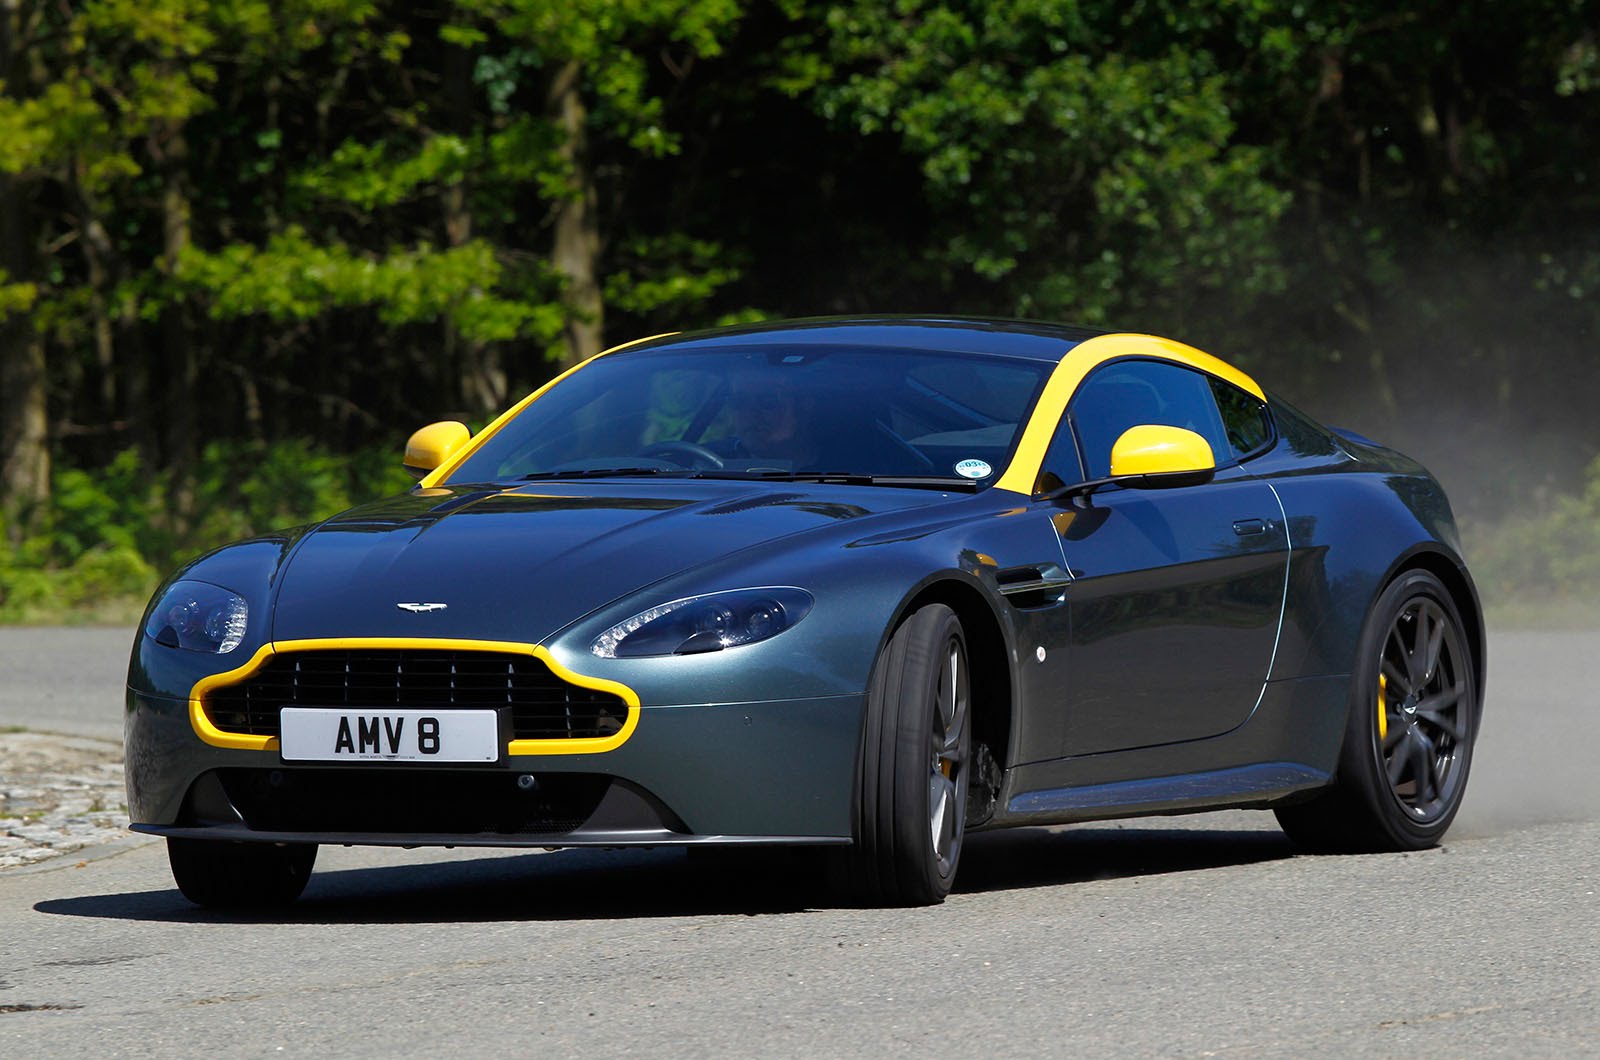 2015 Aston Martin V8 Vantage N430 Backgrounds on Wallpapers Vista